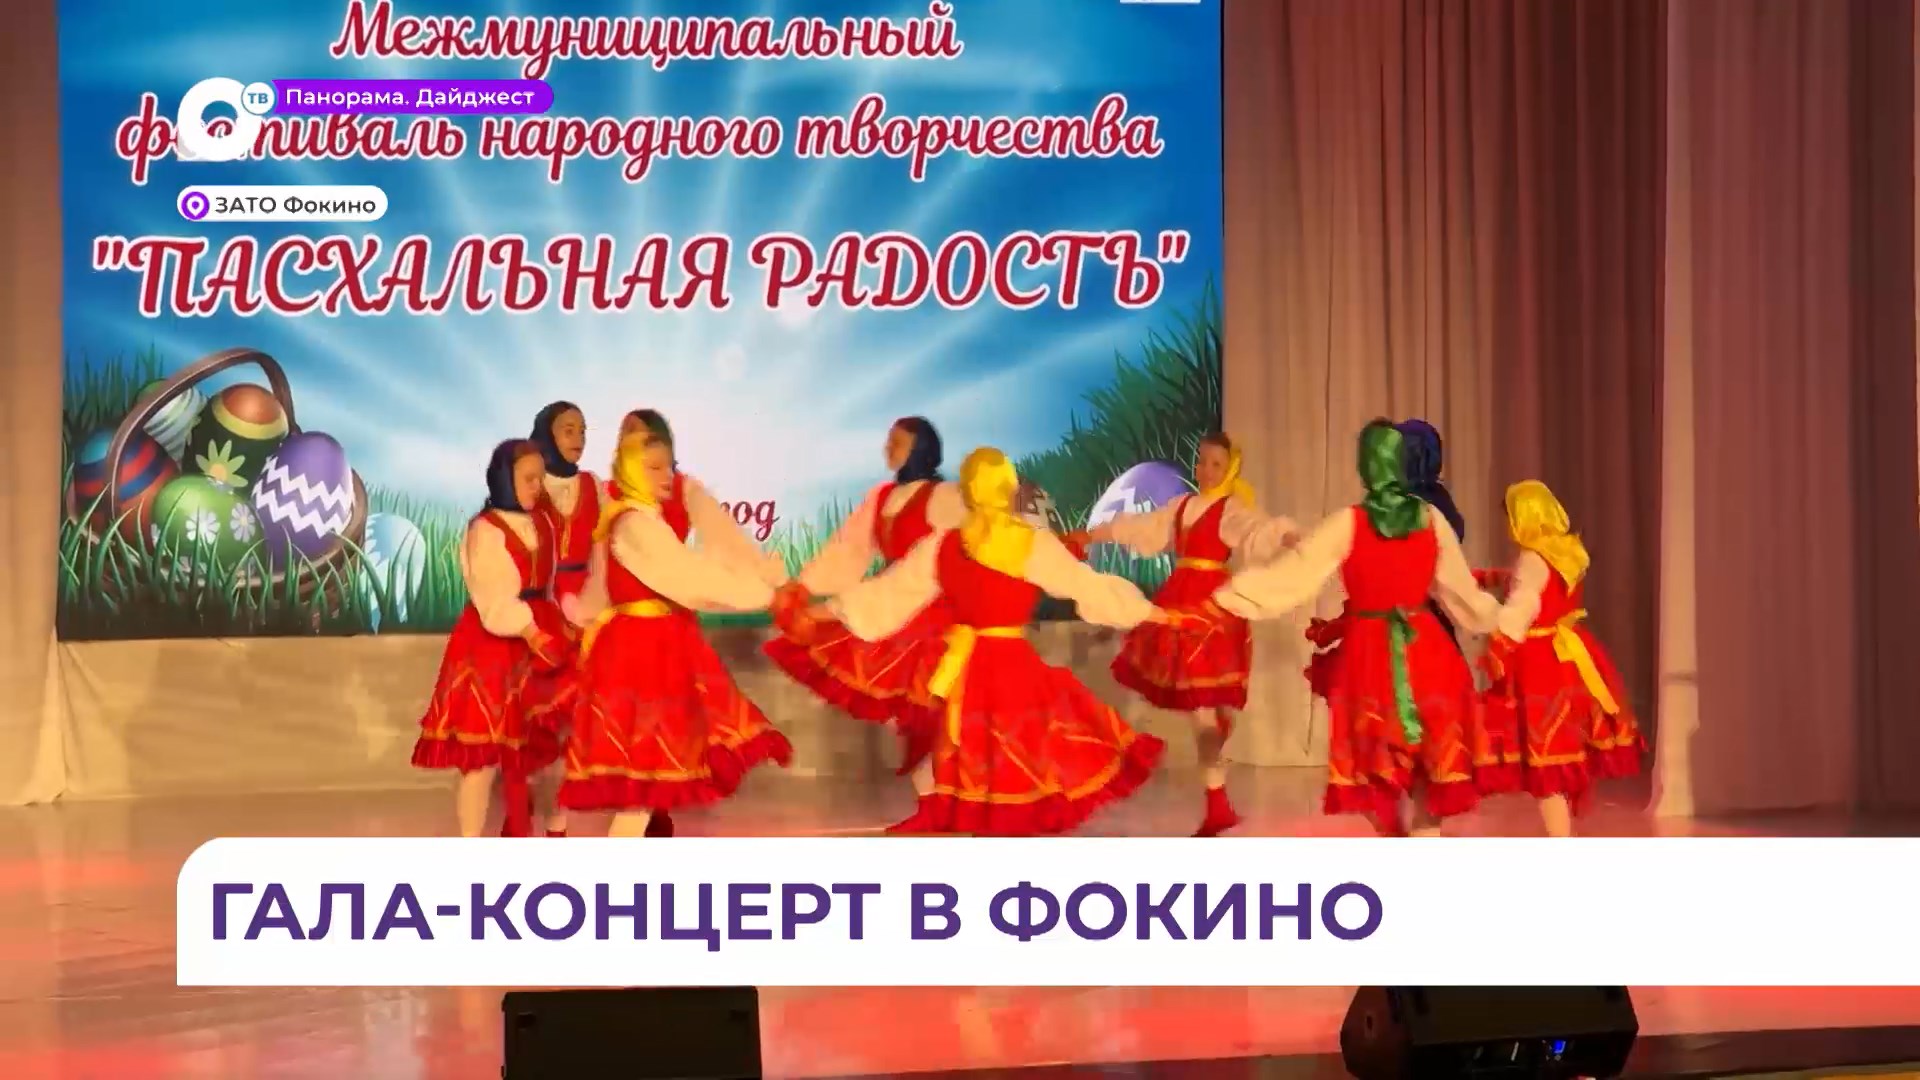 Гала-концерт фестиваля народного творчества «Пасхальная радость» состоялся в Фокино